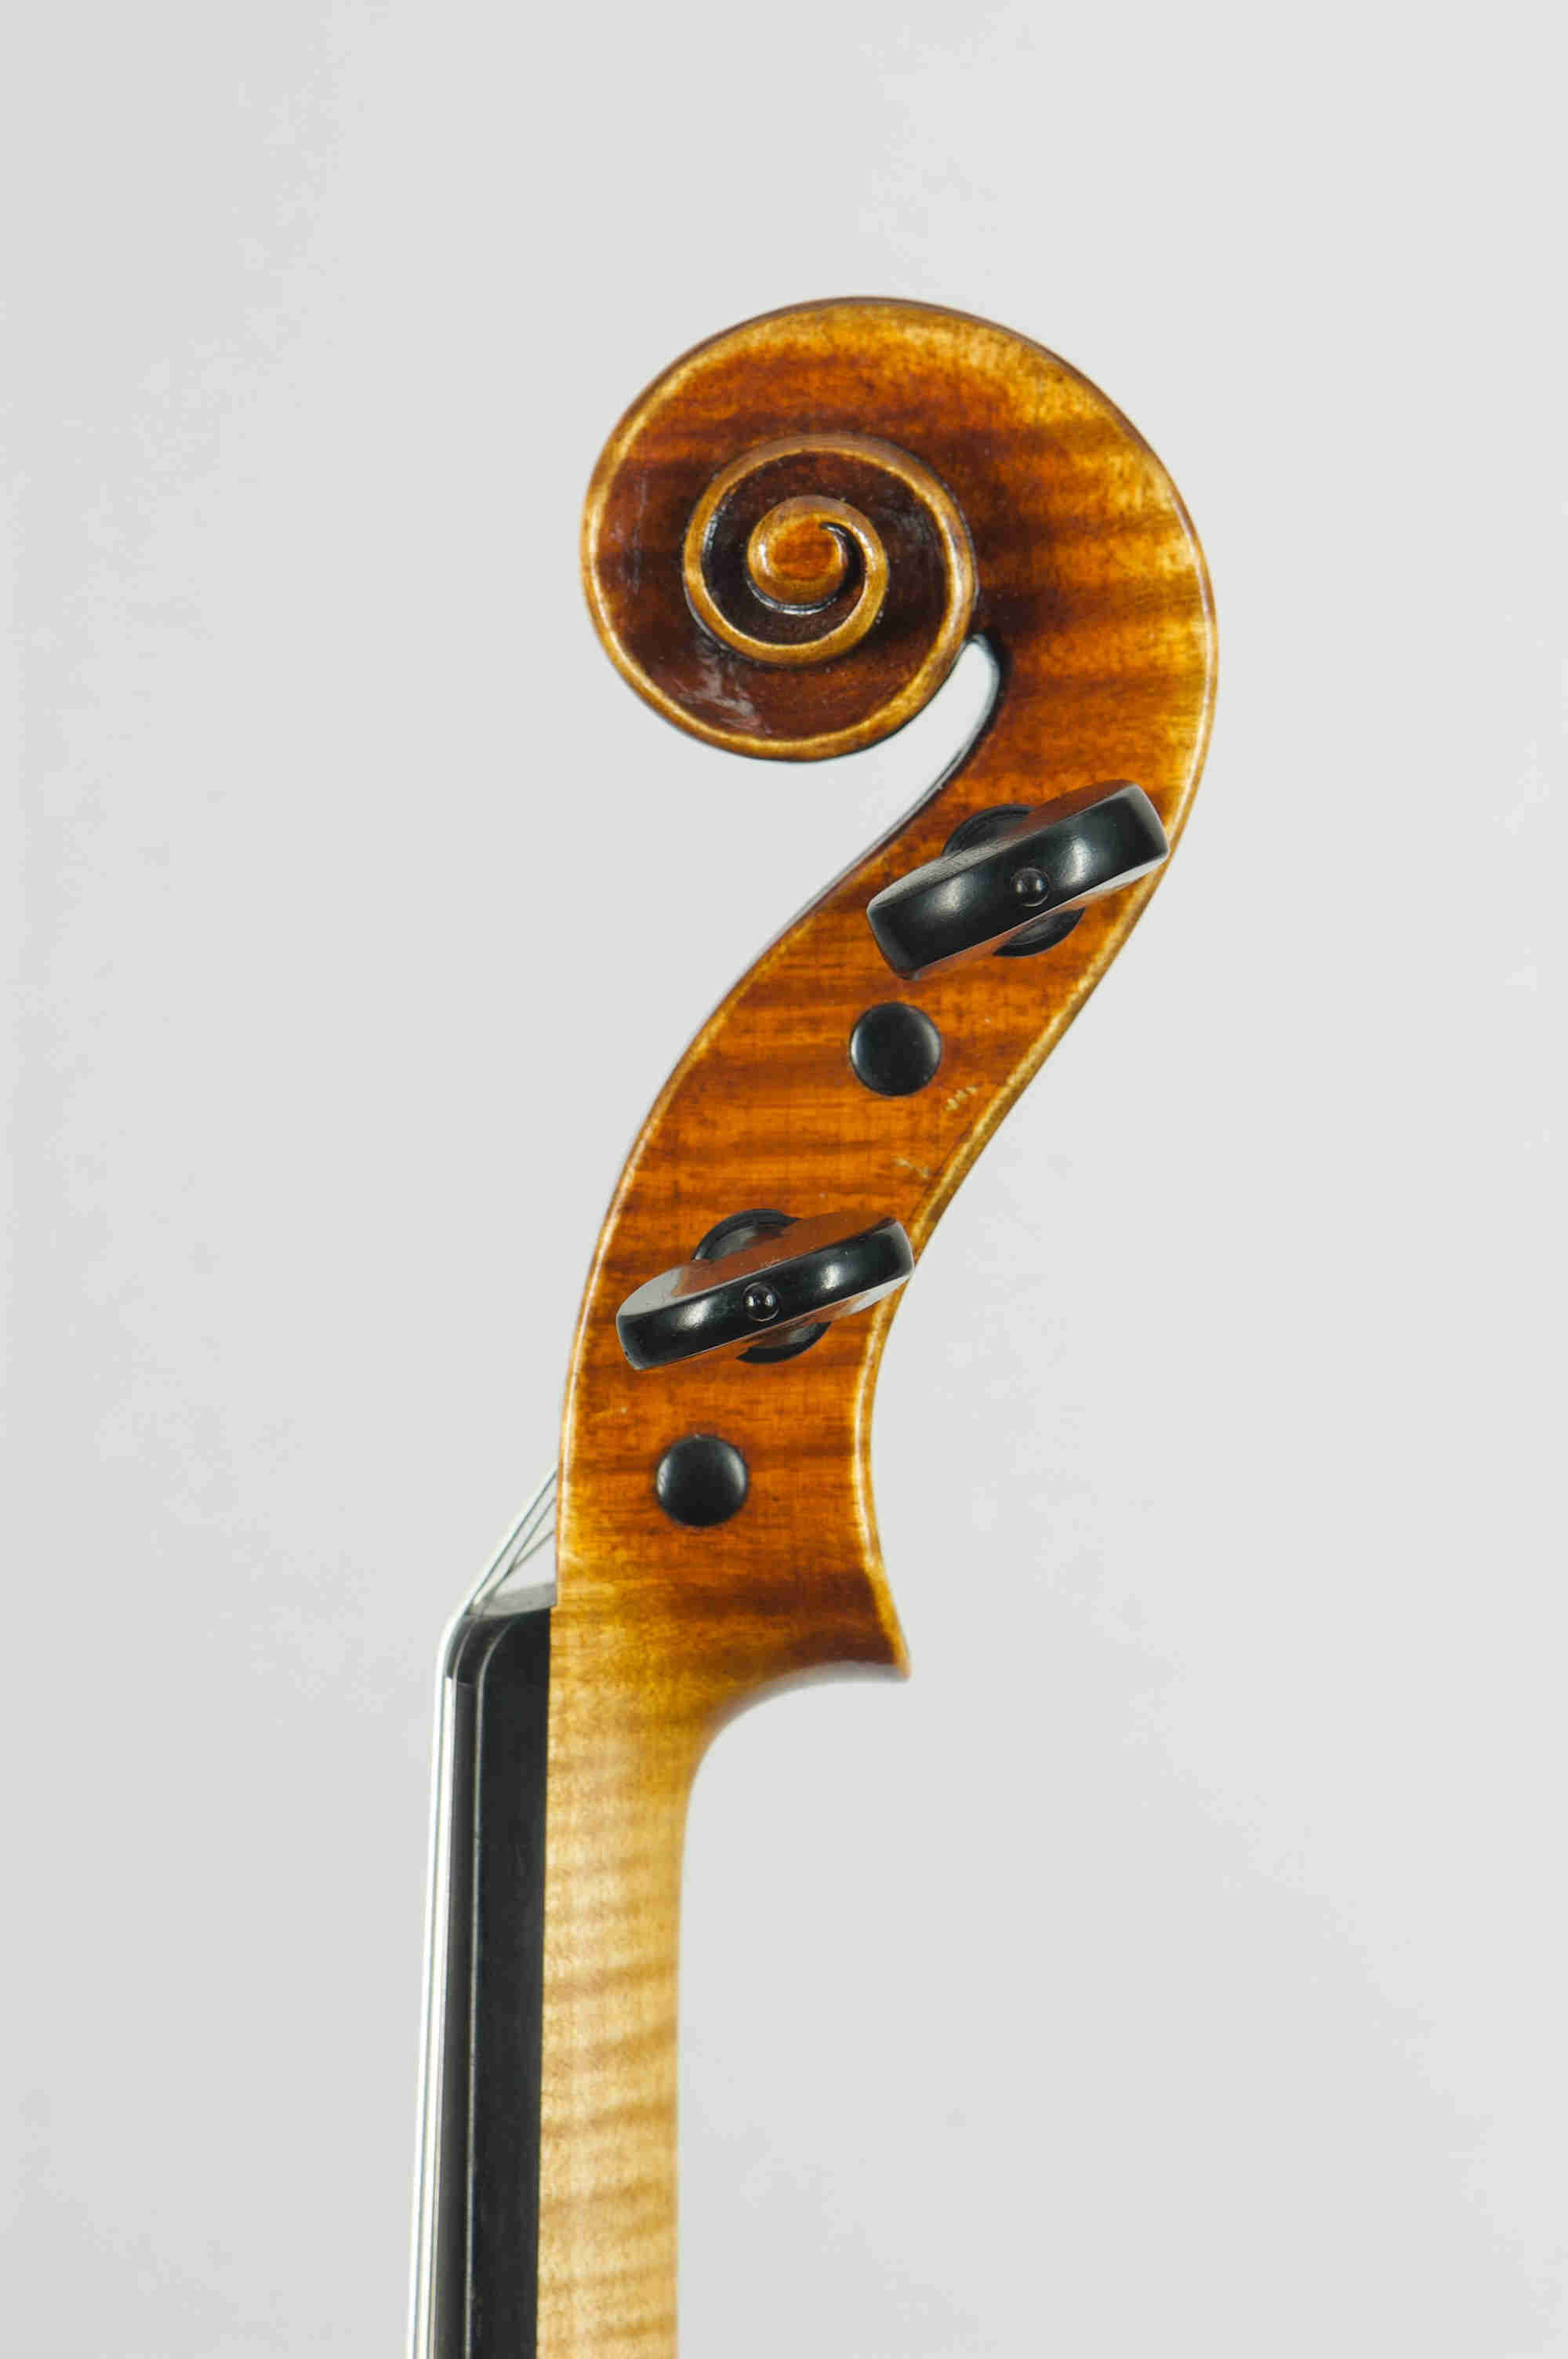 Antonio Stradivari 'Mediceo' 1716